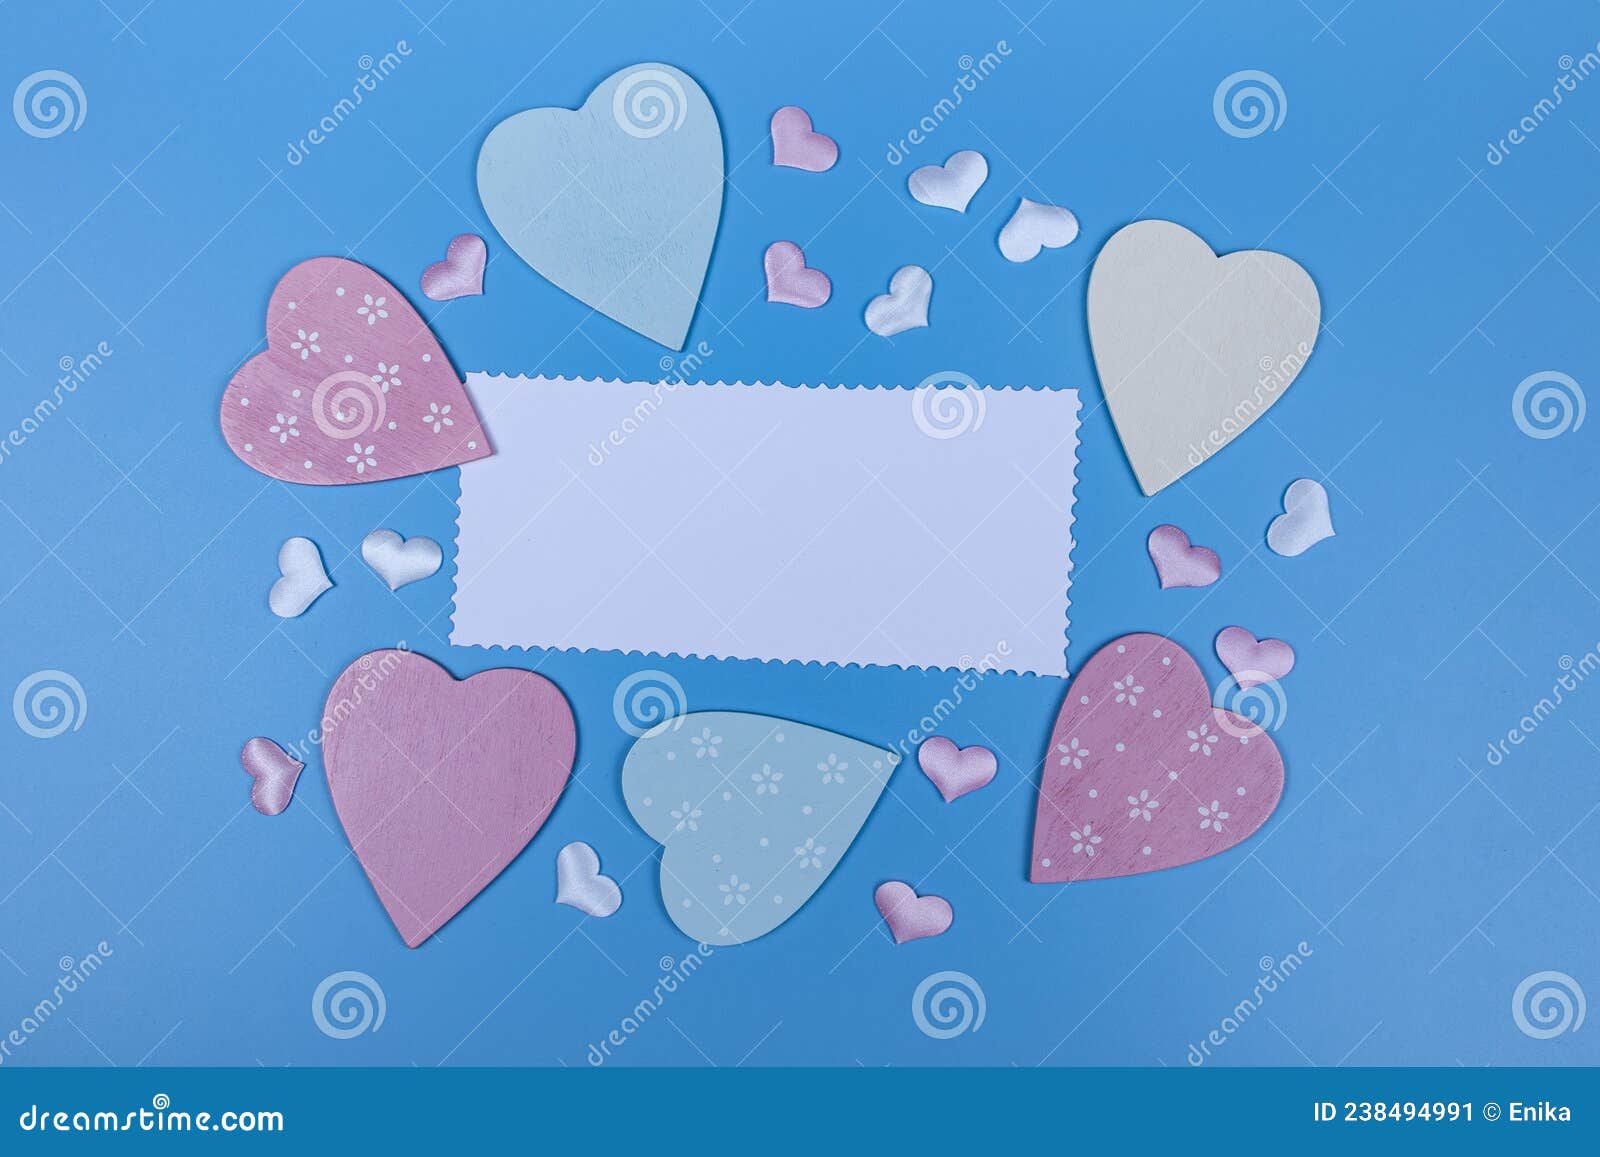 Coeurs Et Une Feuille De Papier Sur Fond Bleu Image stock - Image du ...